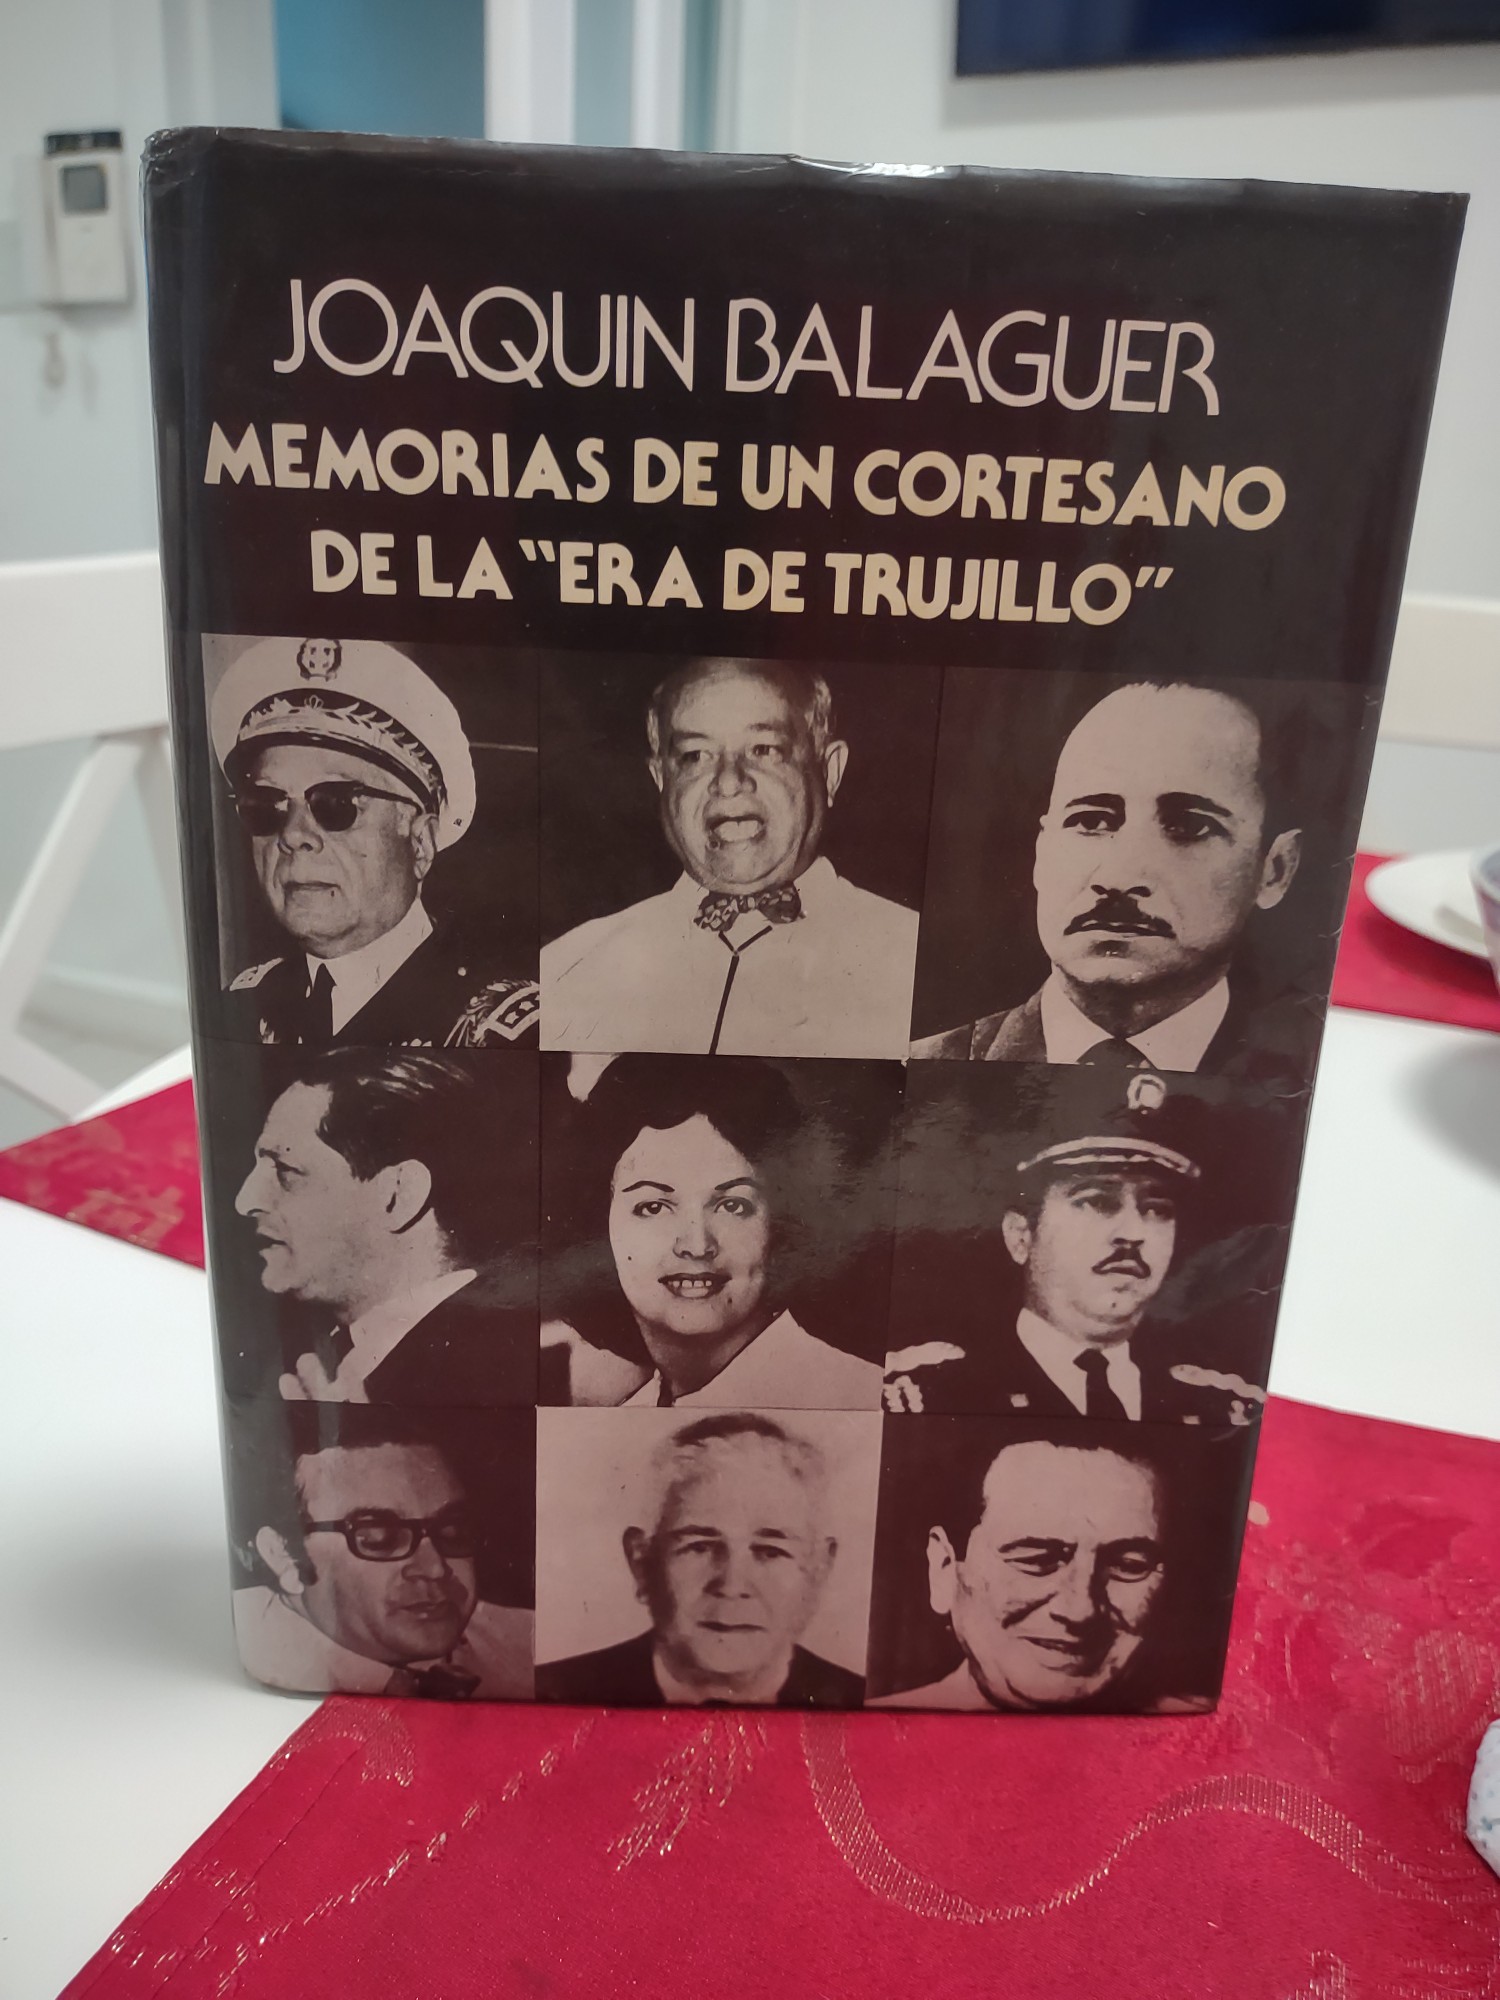 libros y revistas - Atencion coleccionistas vendo antiguo y famoso libro del Dr Joaquin Balaguer,